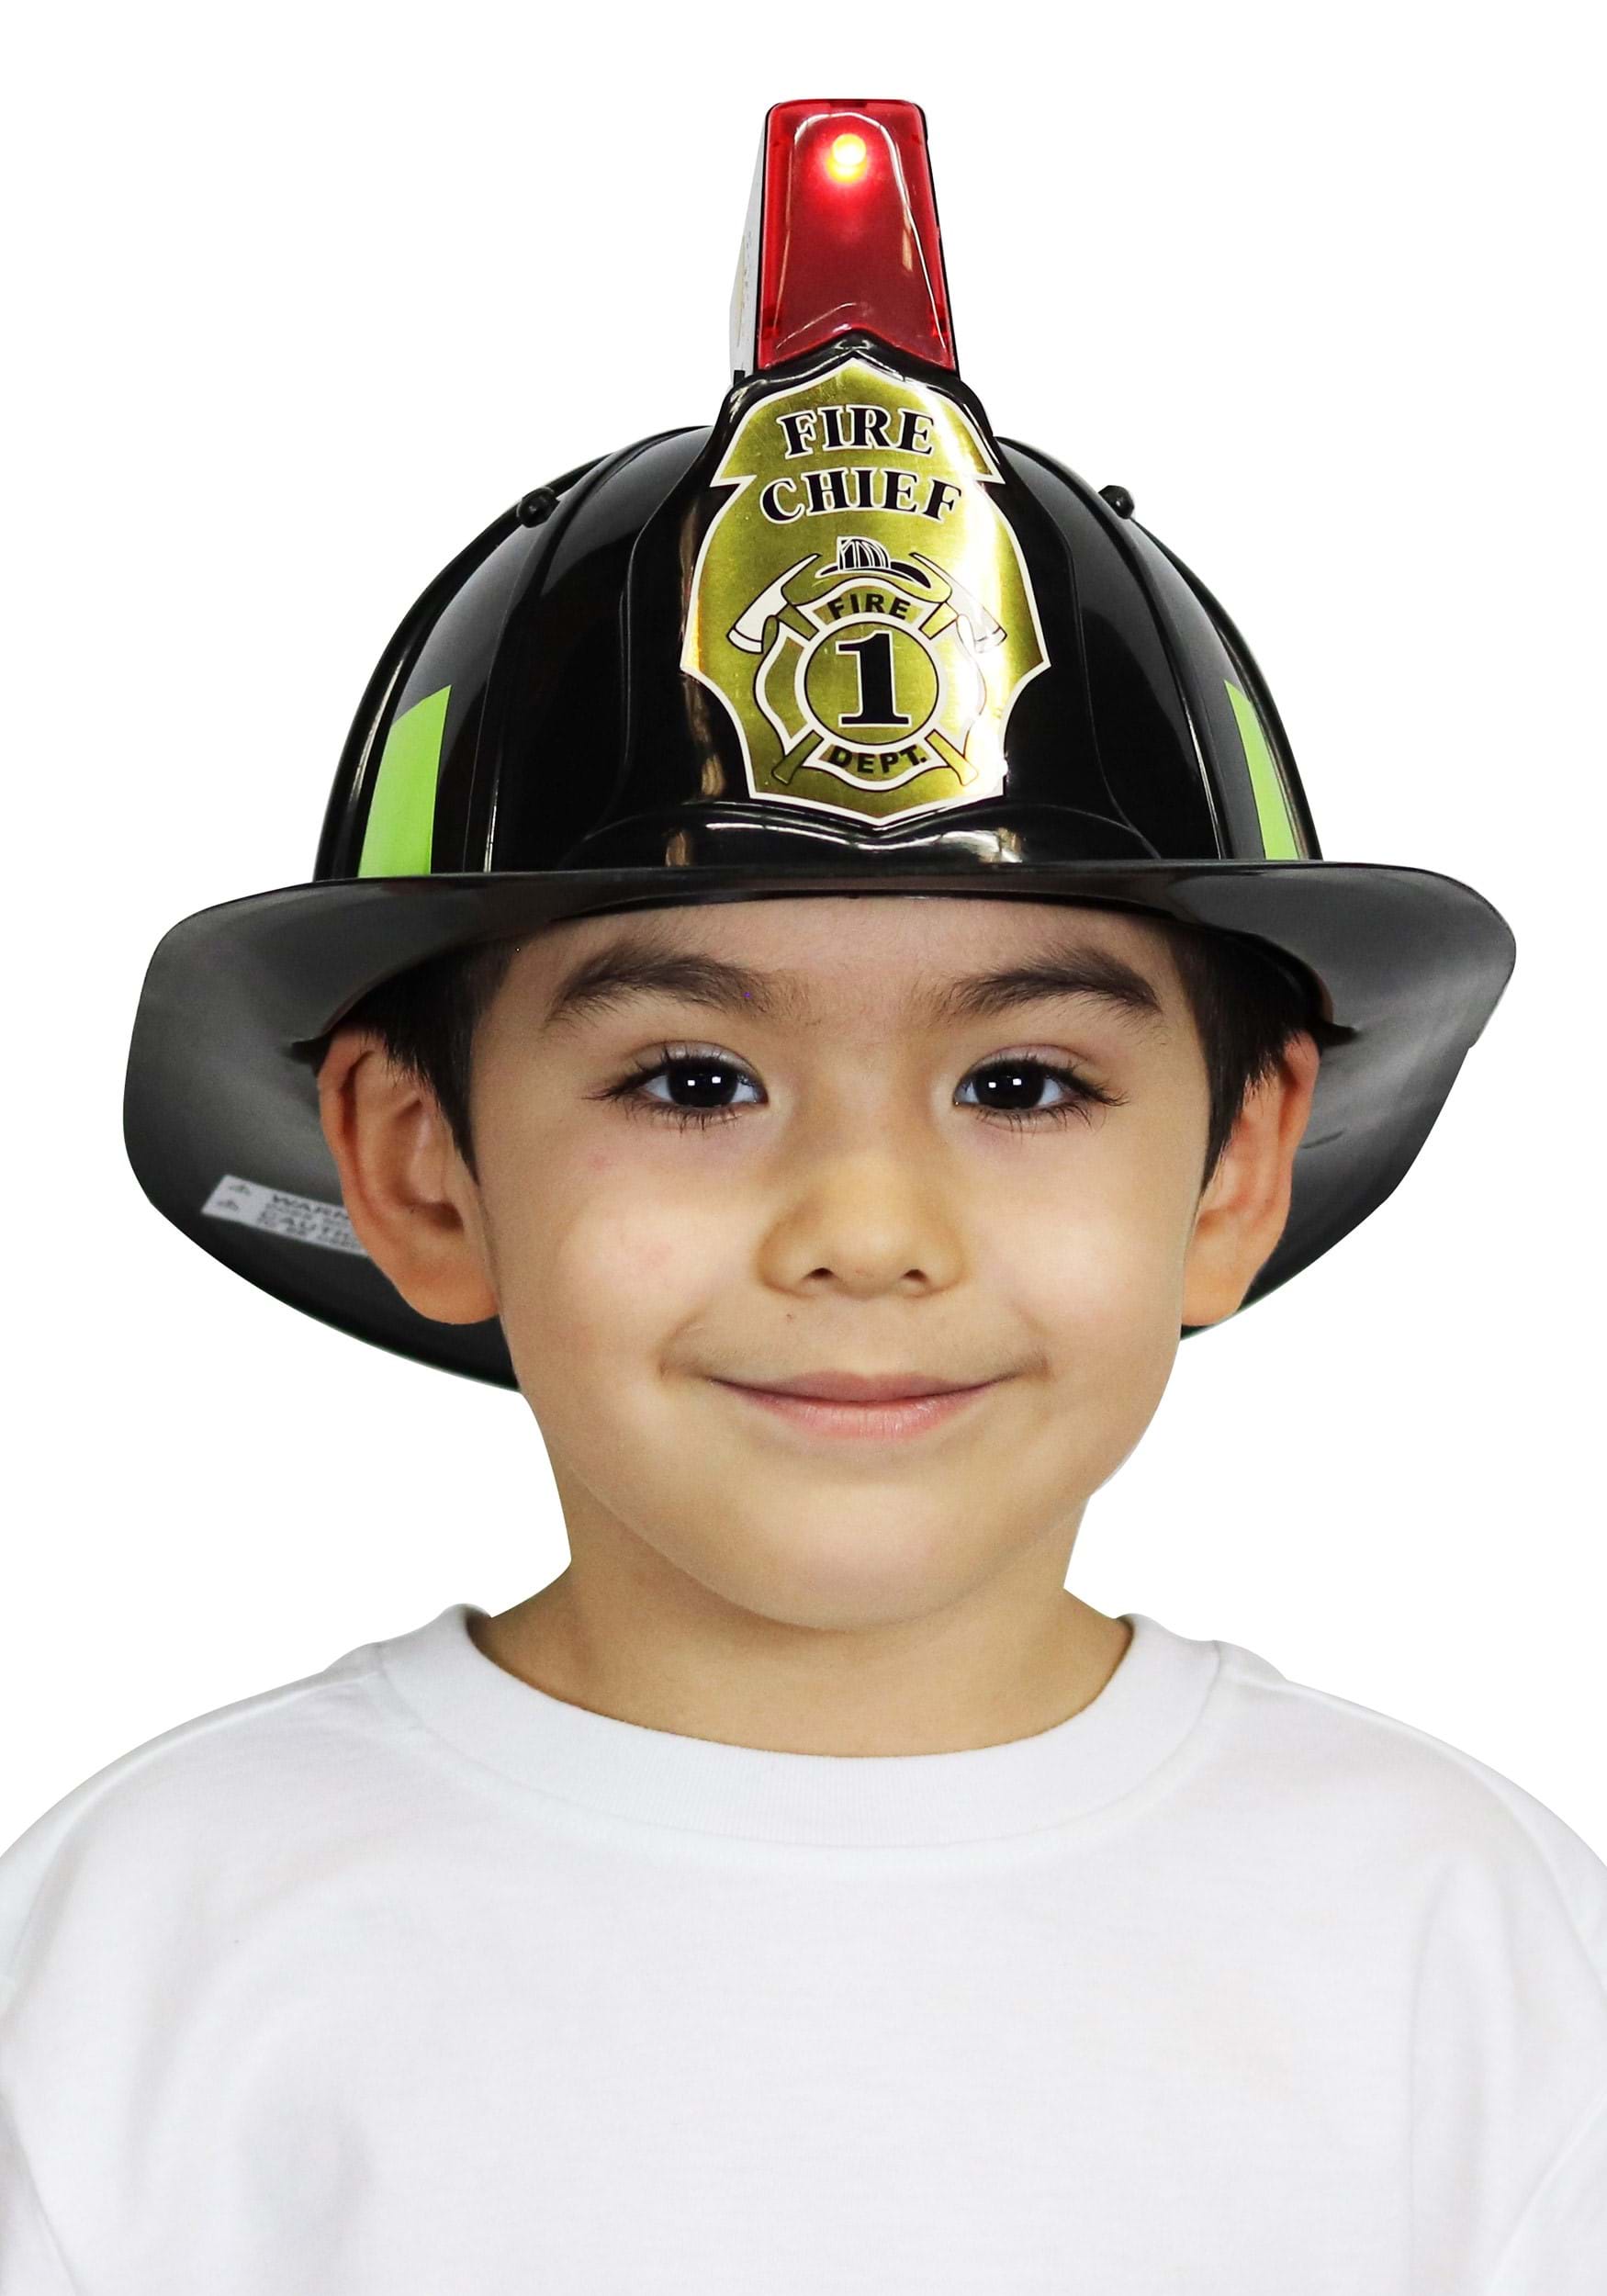 Children Firefighter Fireman Cosplay Toys Kit Helmet Fire Extinguisher Kids Gift 